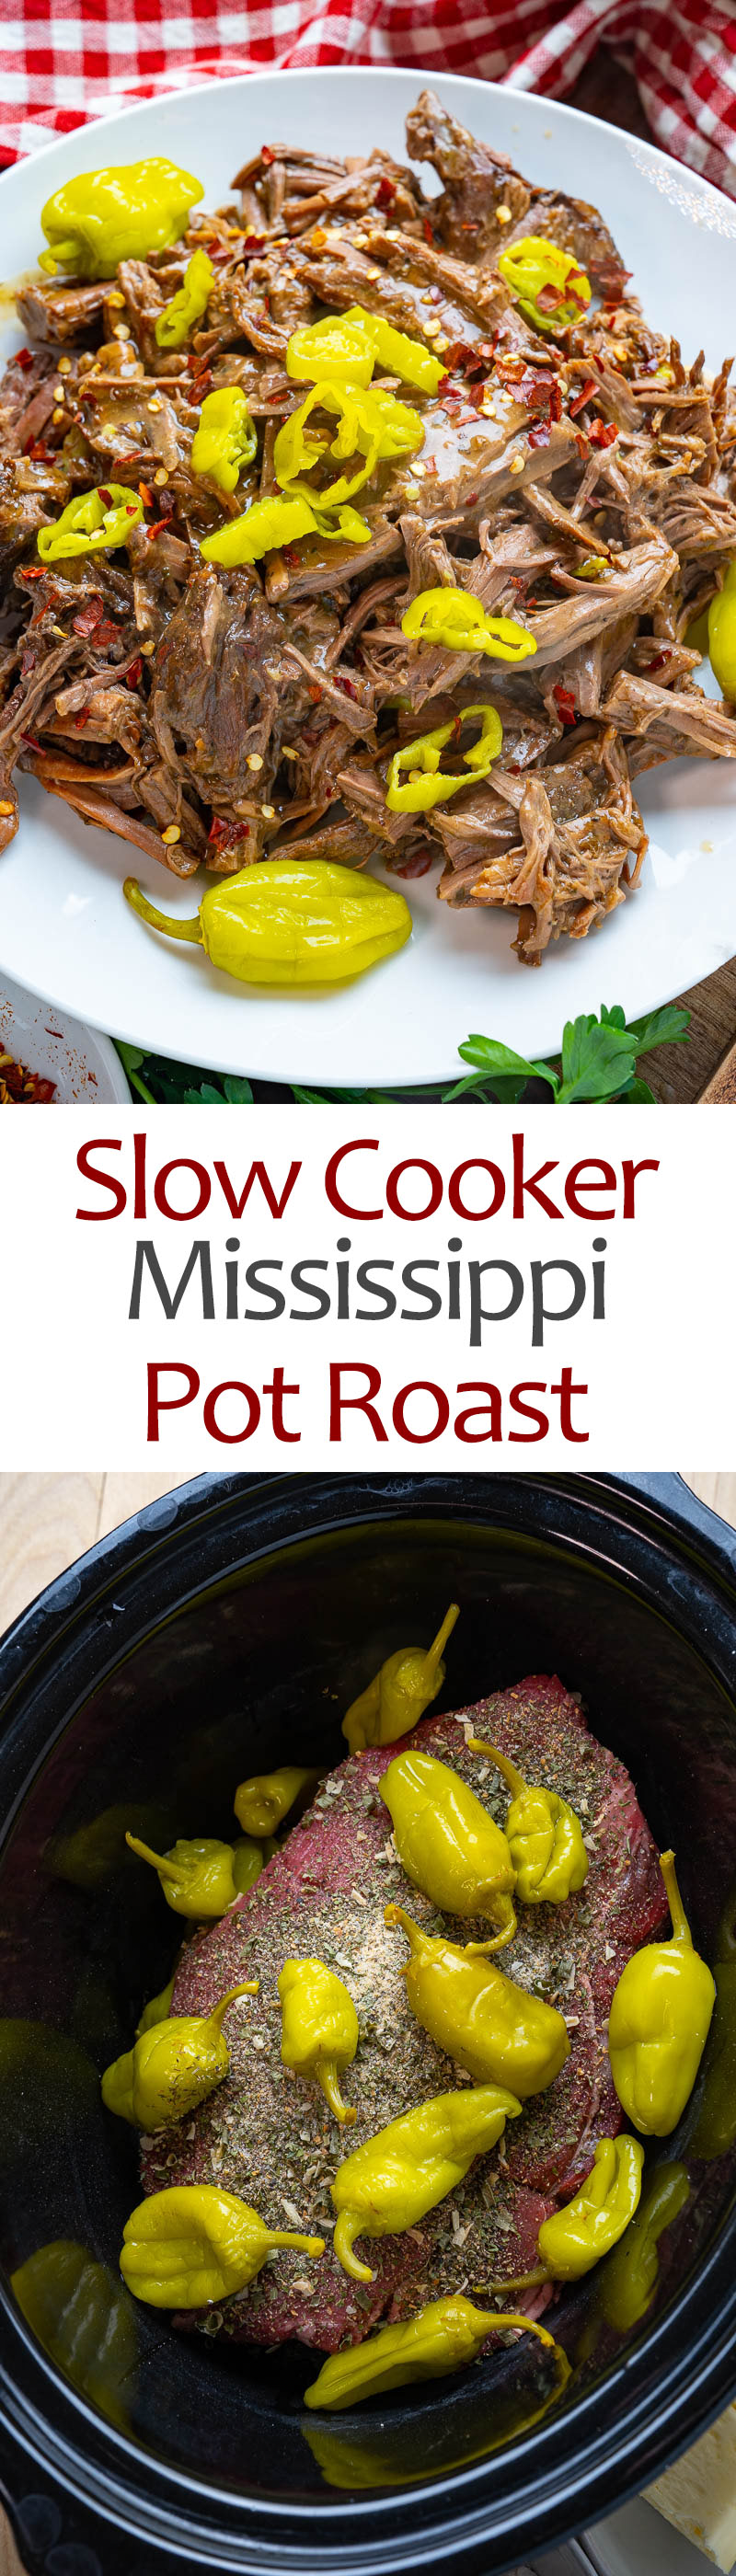 Slow Cooker Mississippi Pot Roast